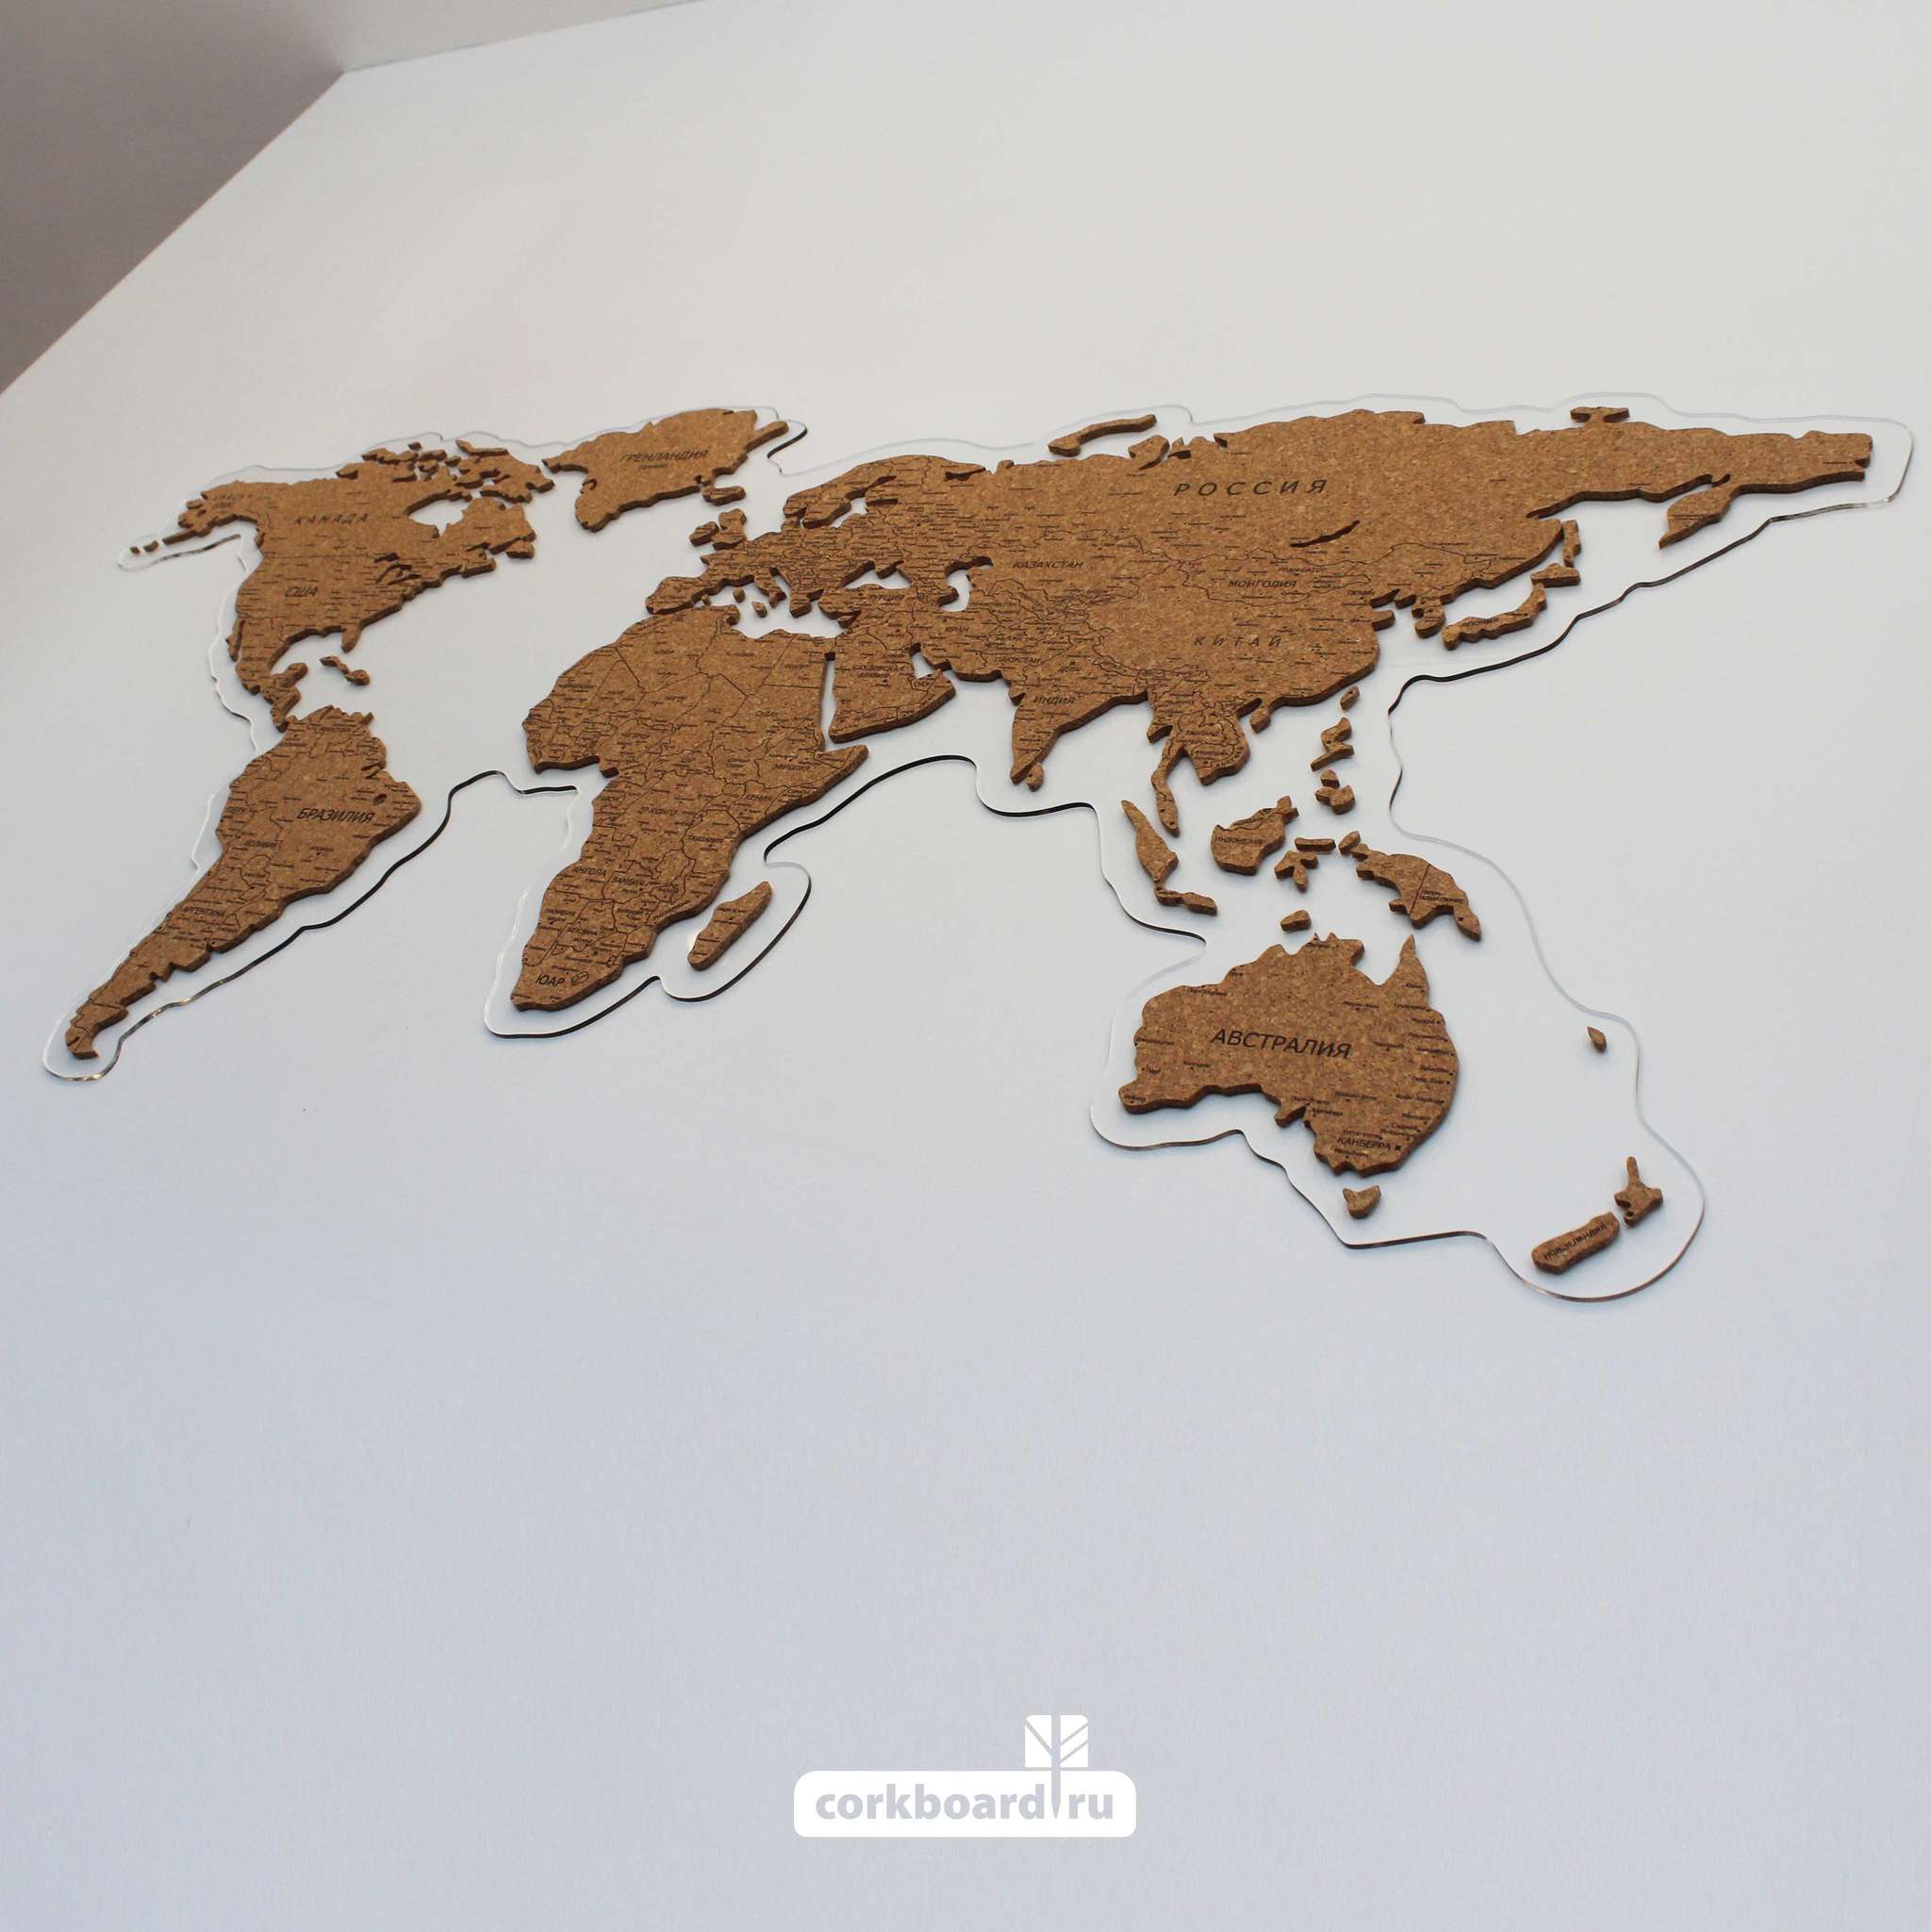 Пробковая карта мира на оргстекле